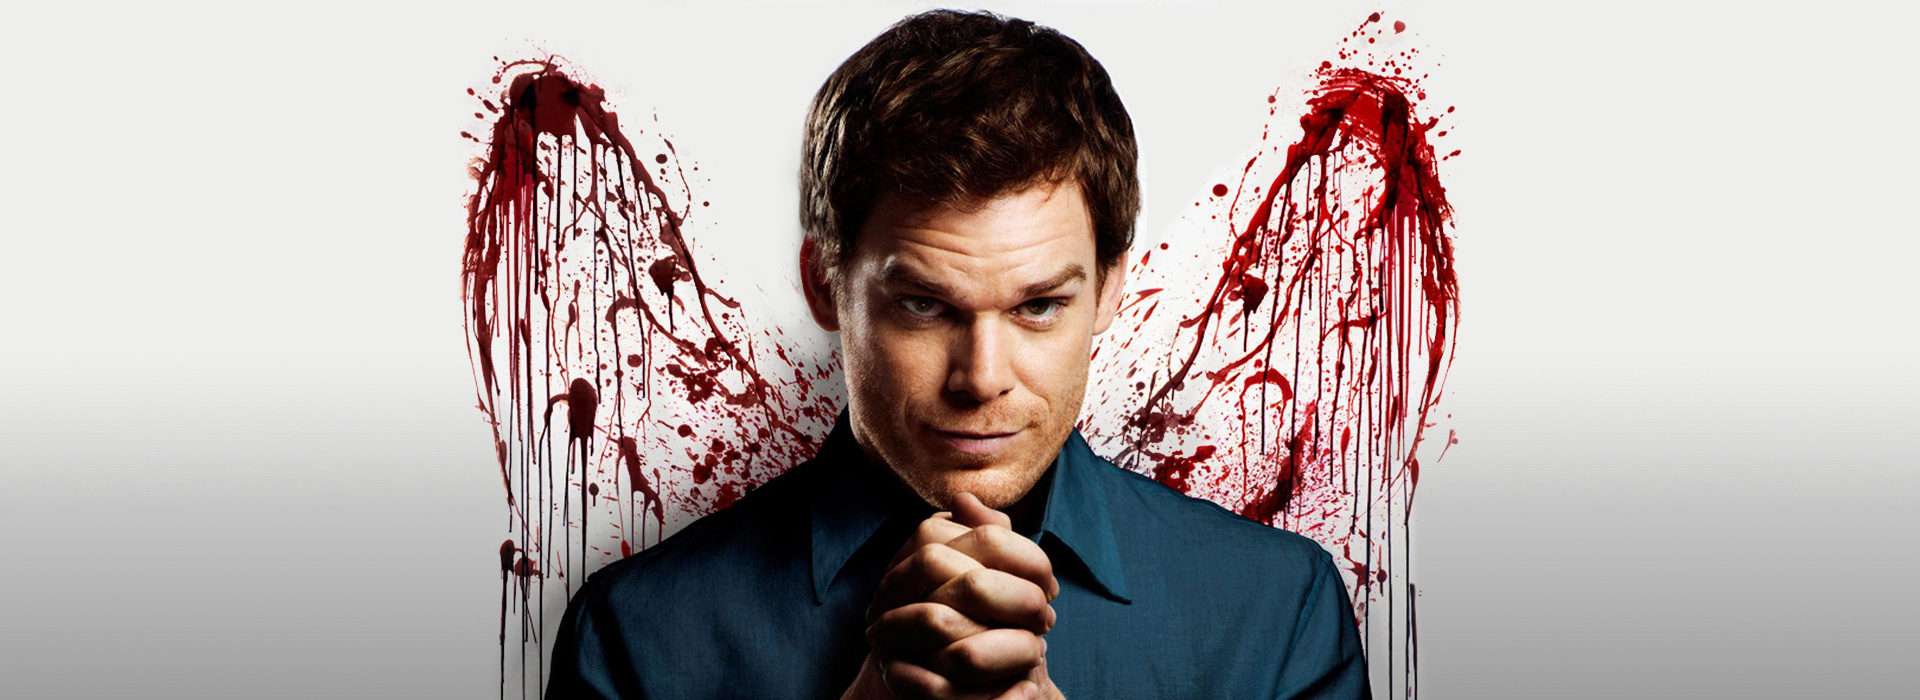 Series poster Dexter